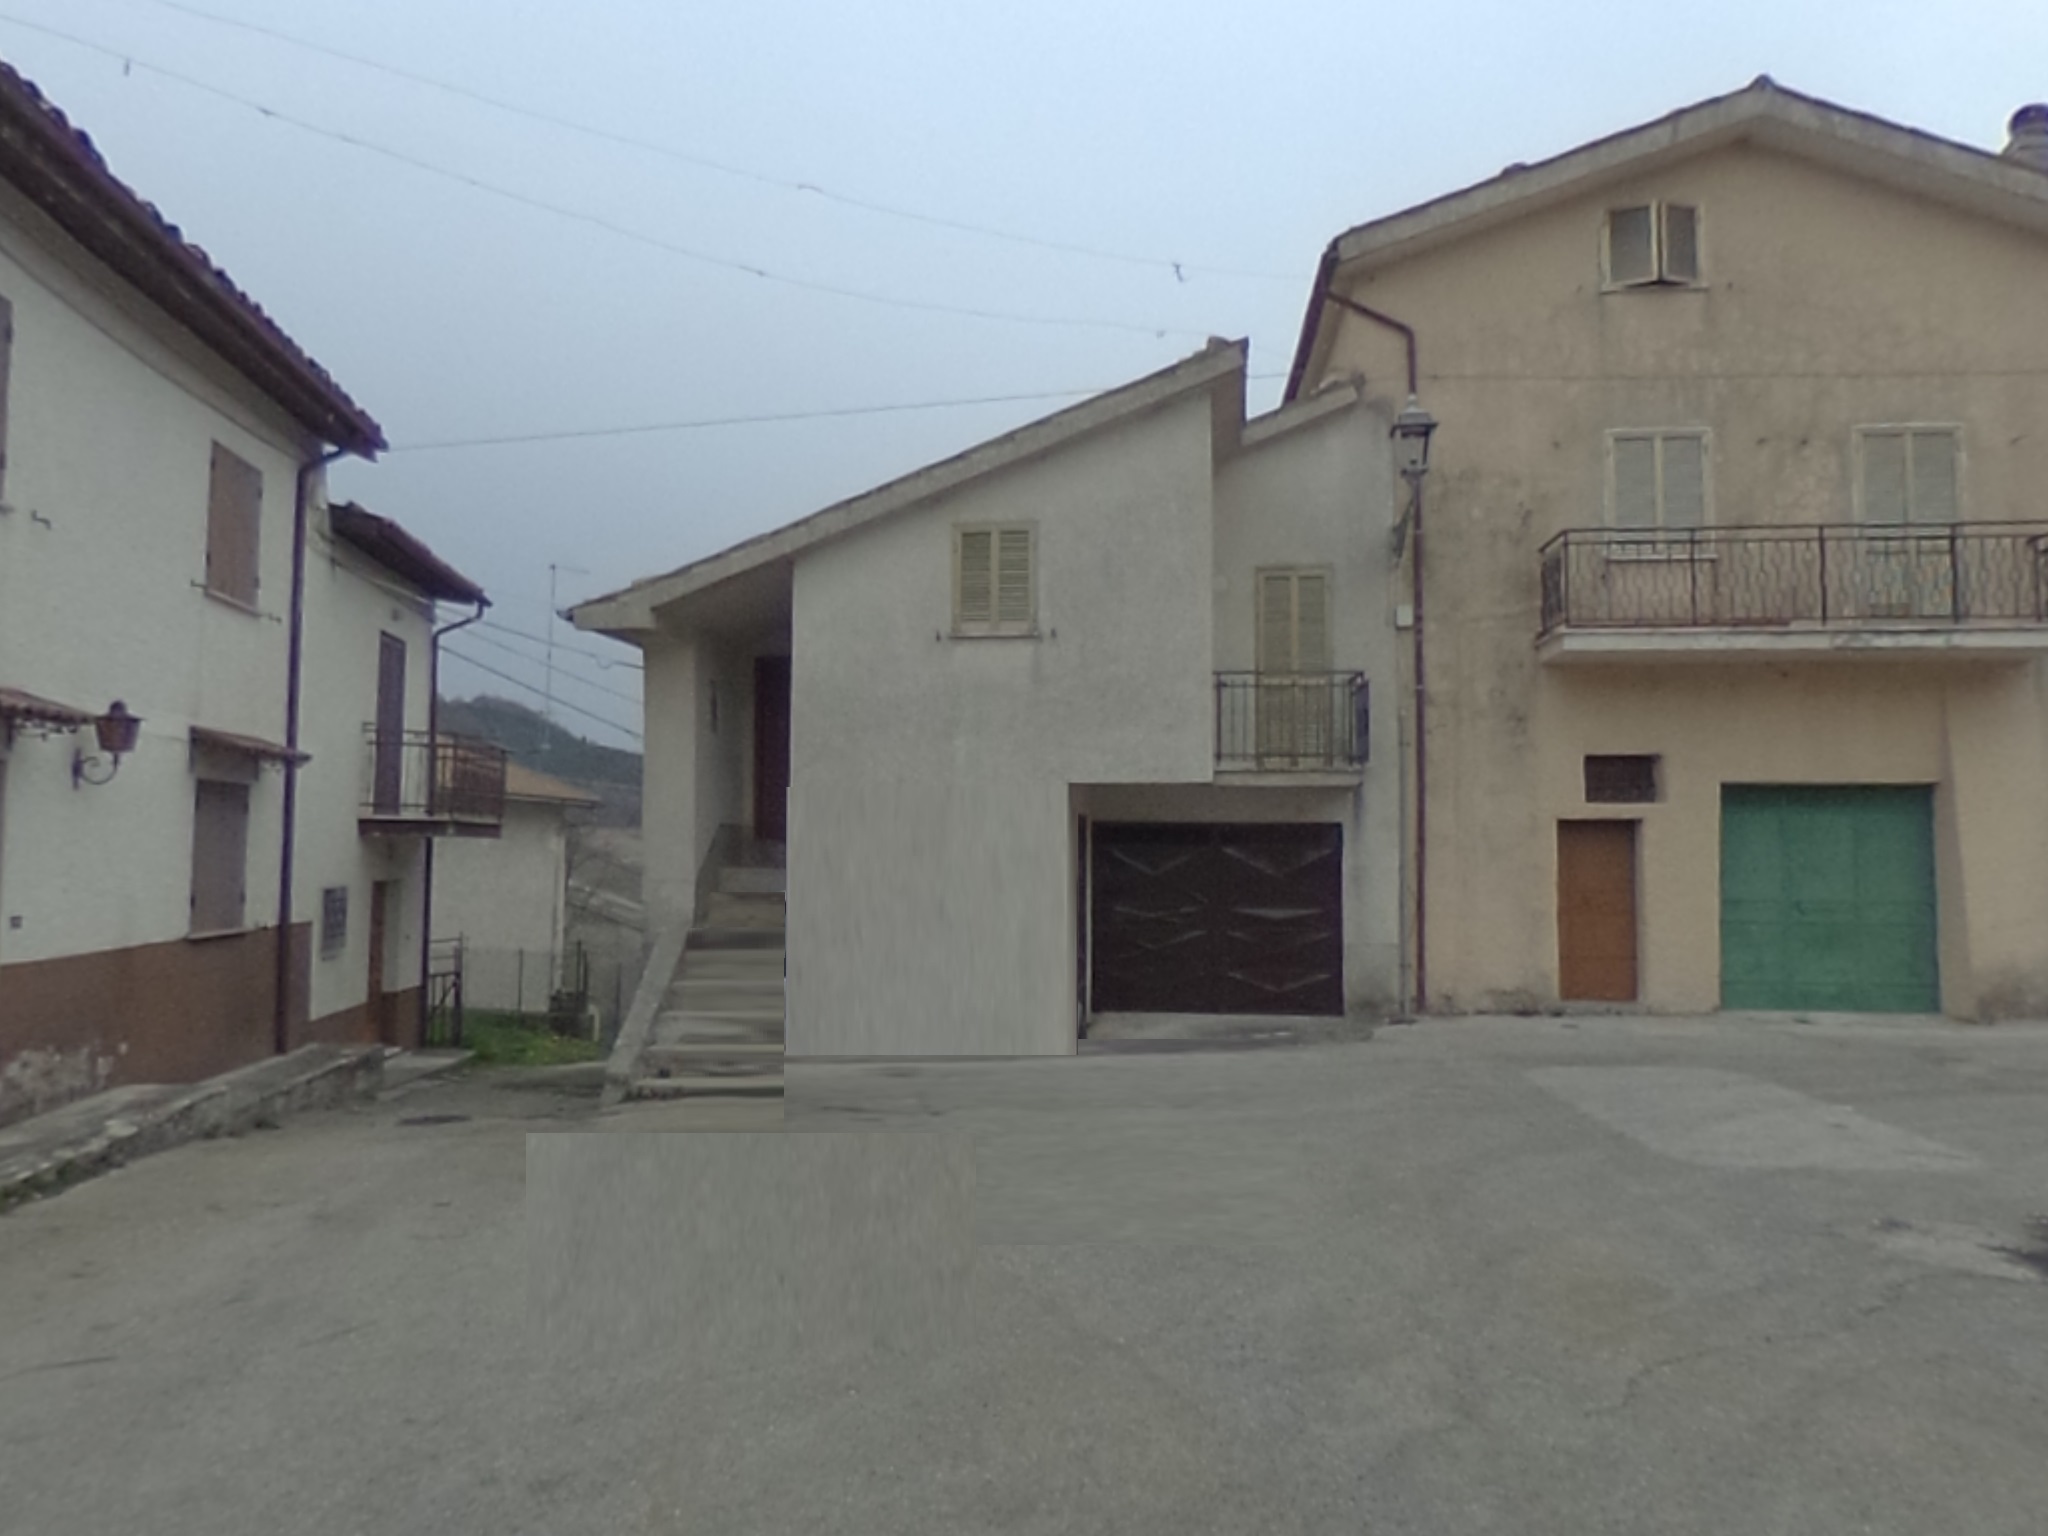 Leonessa – Villa Pulcini Casetta indipendente con cantina